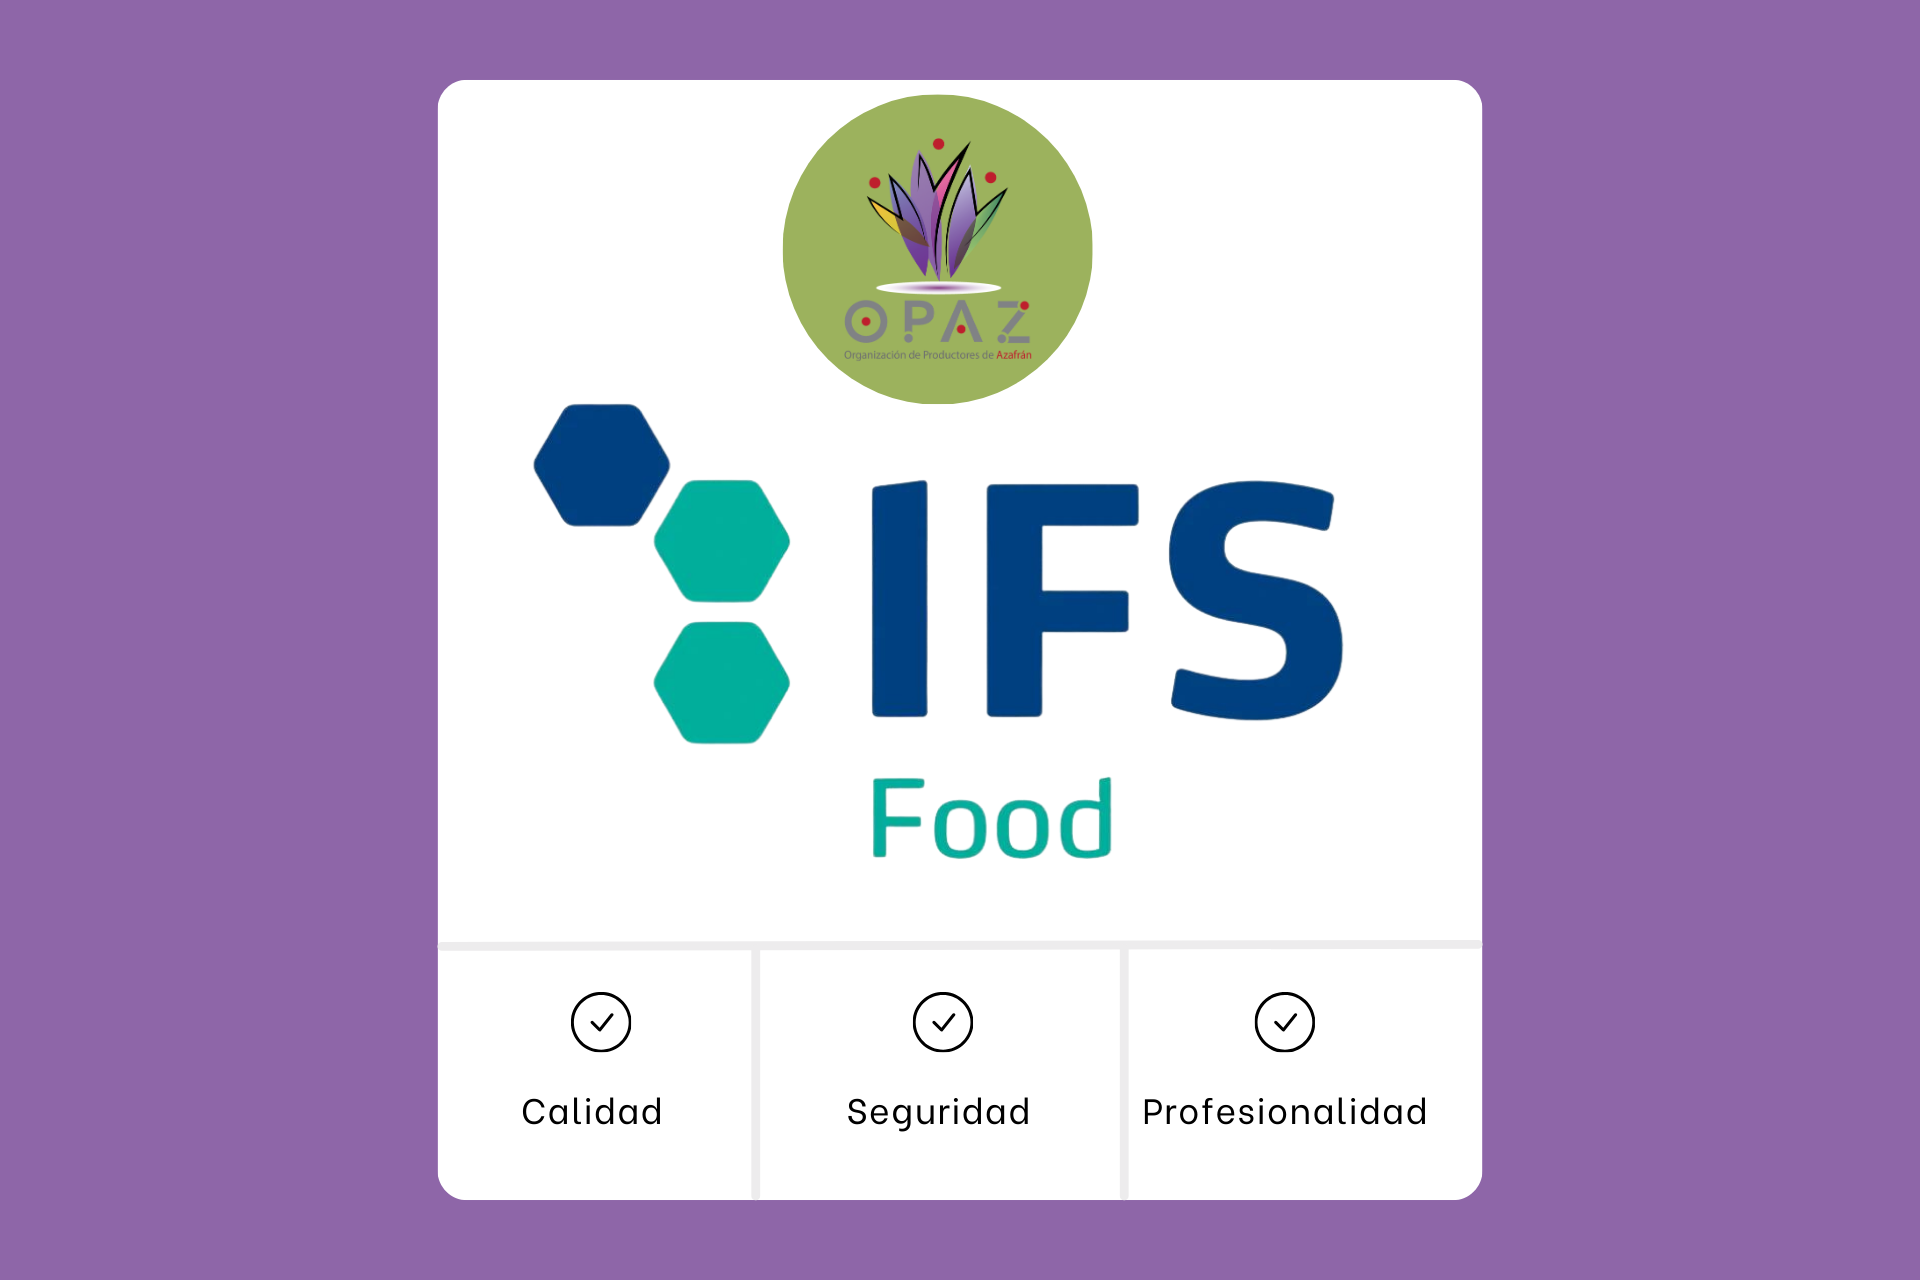 OPAZ obtiene el ISF FOOD V.8, un distintivo de calidad alimentaria muy prestigioso a nivel mundial